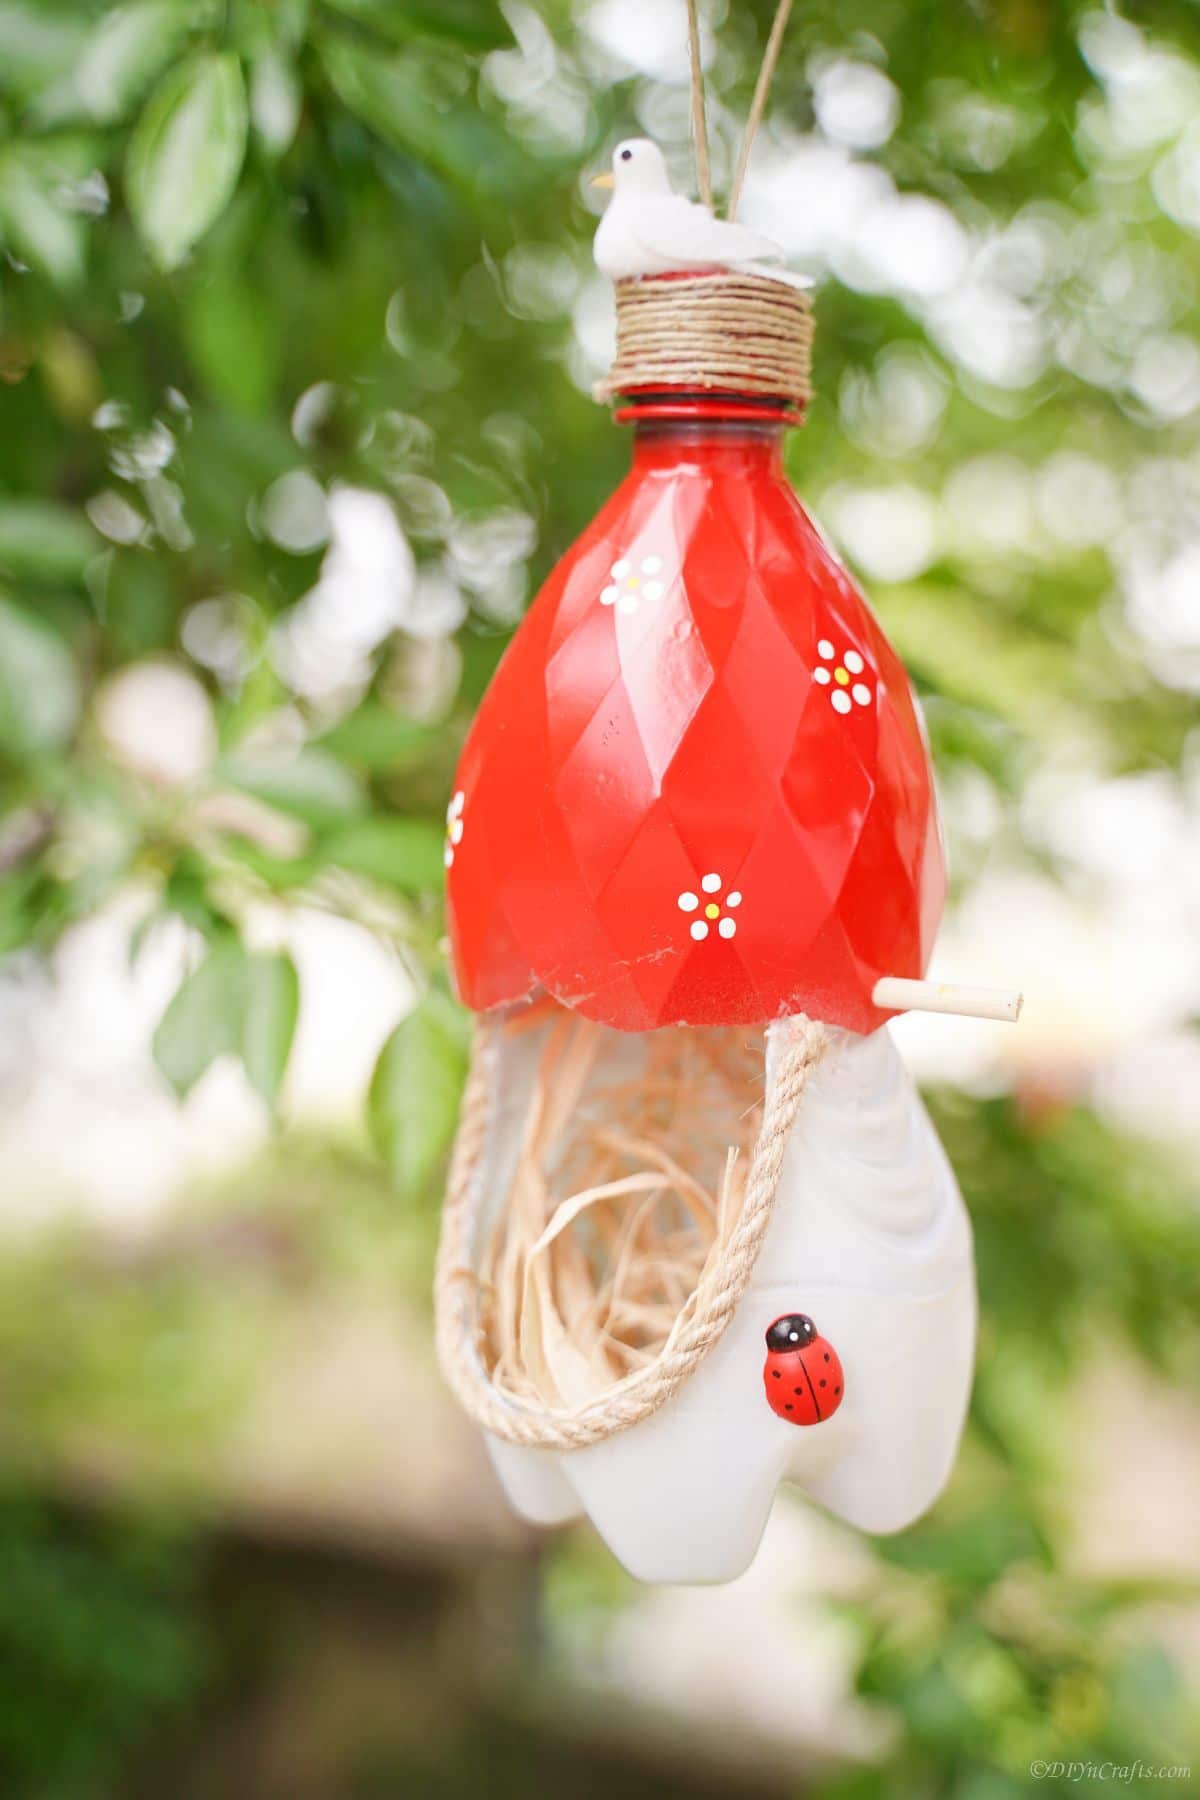 birds nest made of plastic bottles in tree